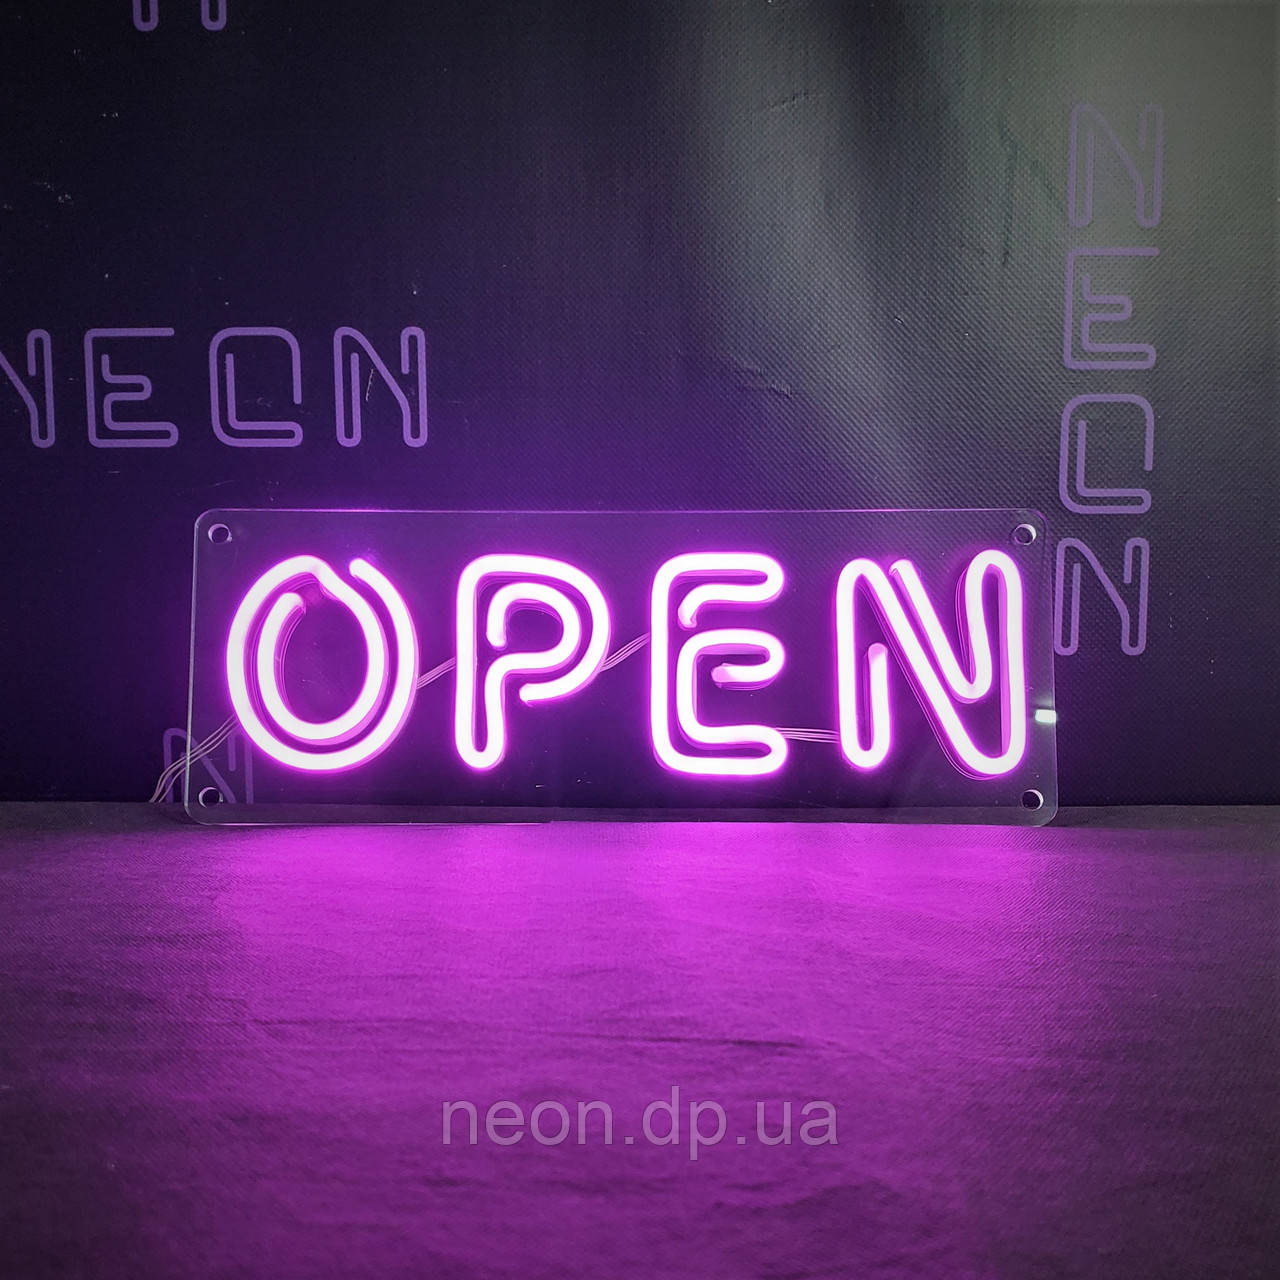 Неонова вивіска "OPEN"